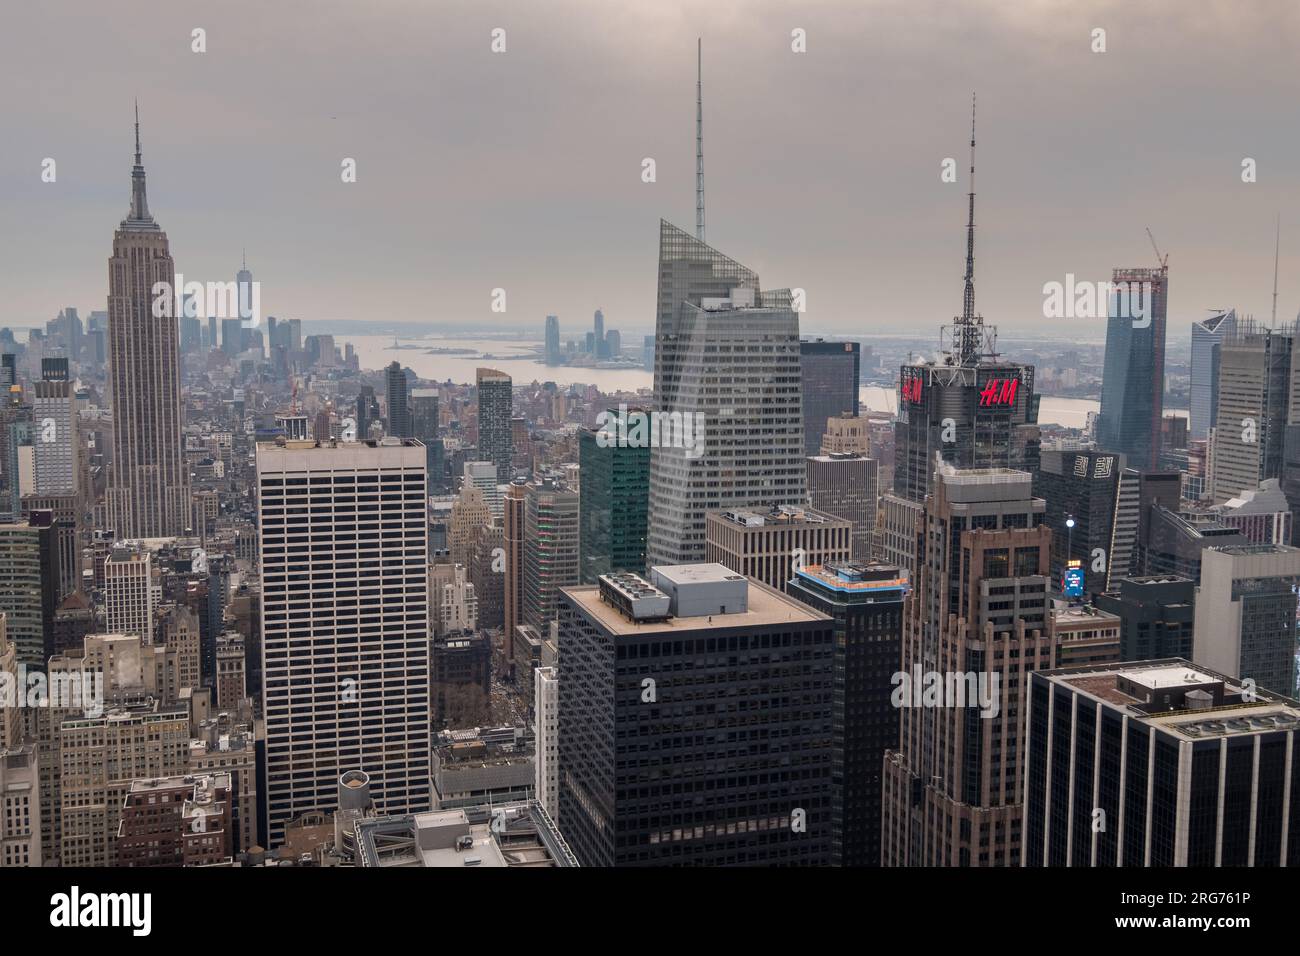 Manhattan, Nueva York, EE.UU. - 9 de diciembre, 2018: Vista clásica desde la parte superior del edificio Top of the Rock hacia el sur de la isla de Manhattan. Foto de stock